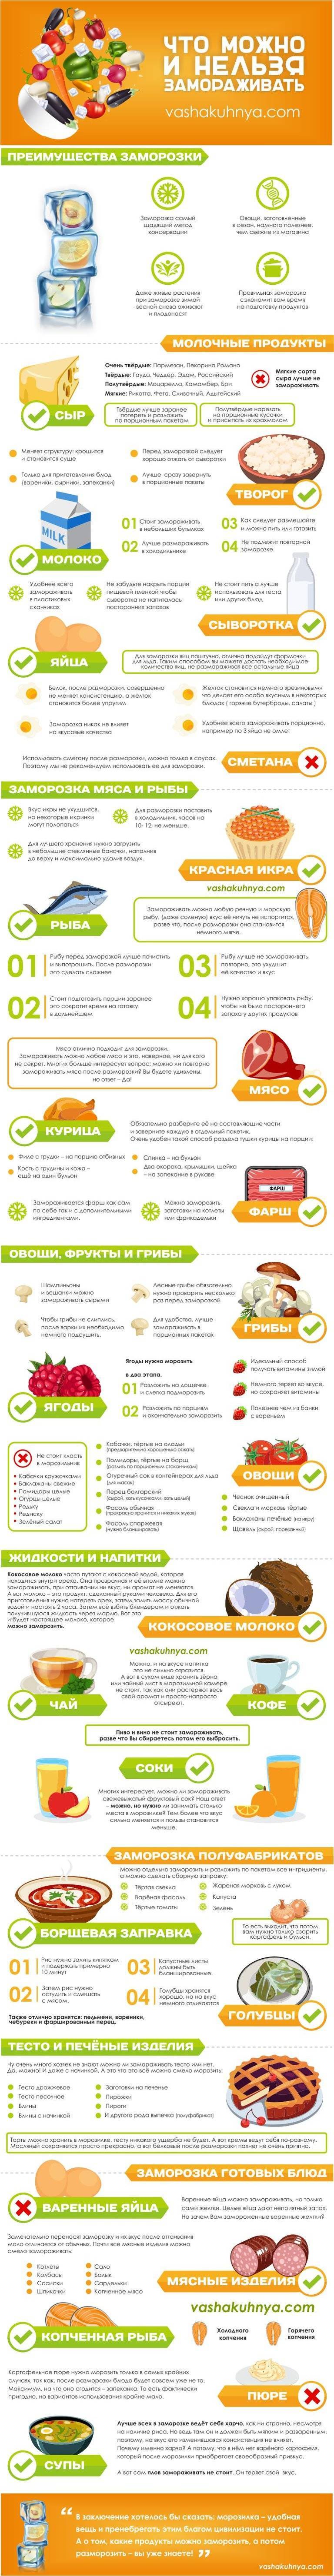 10 правил качественной заморозки ягод и фруктов